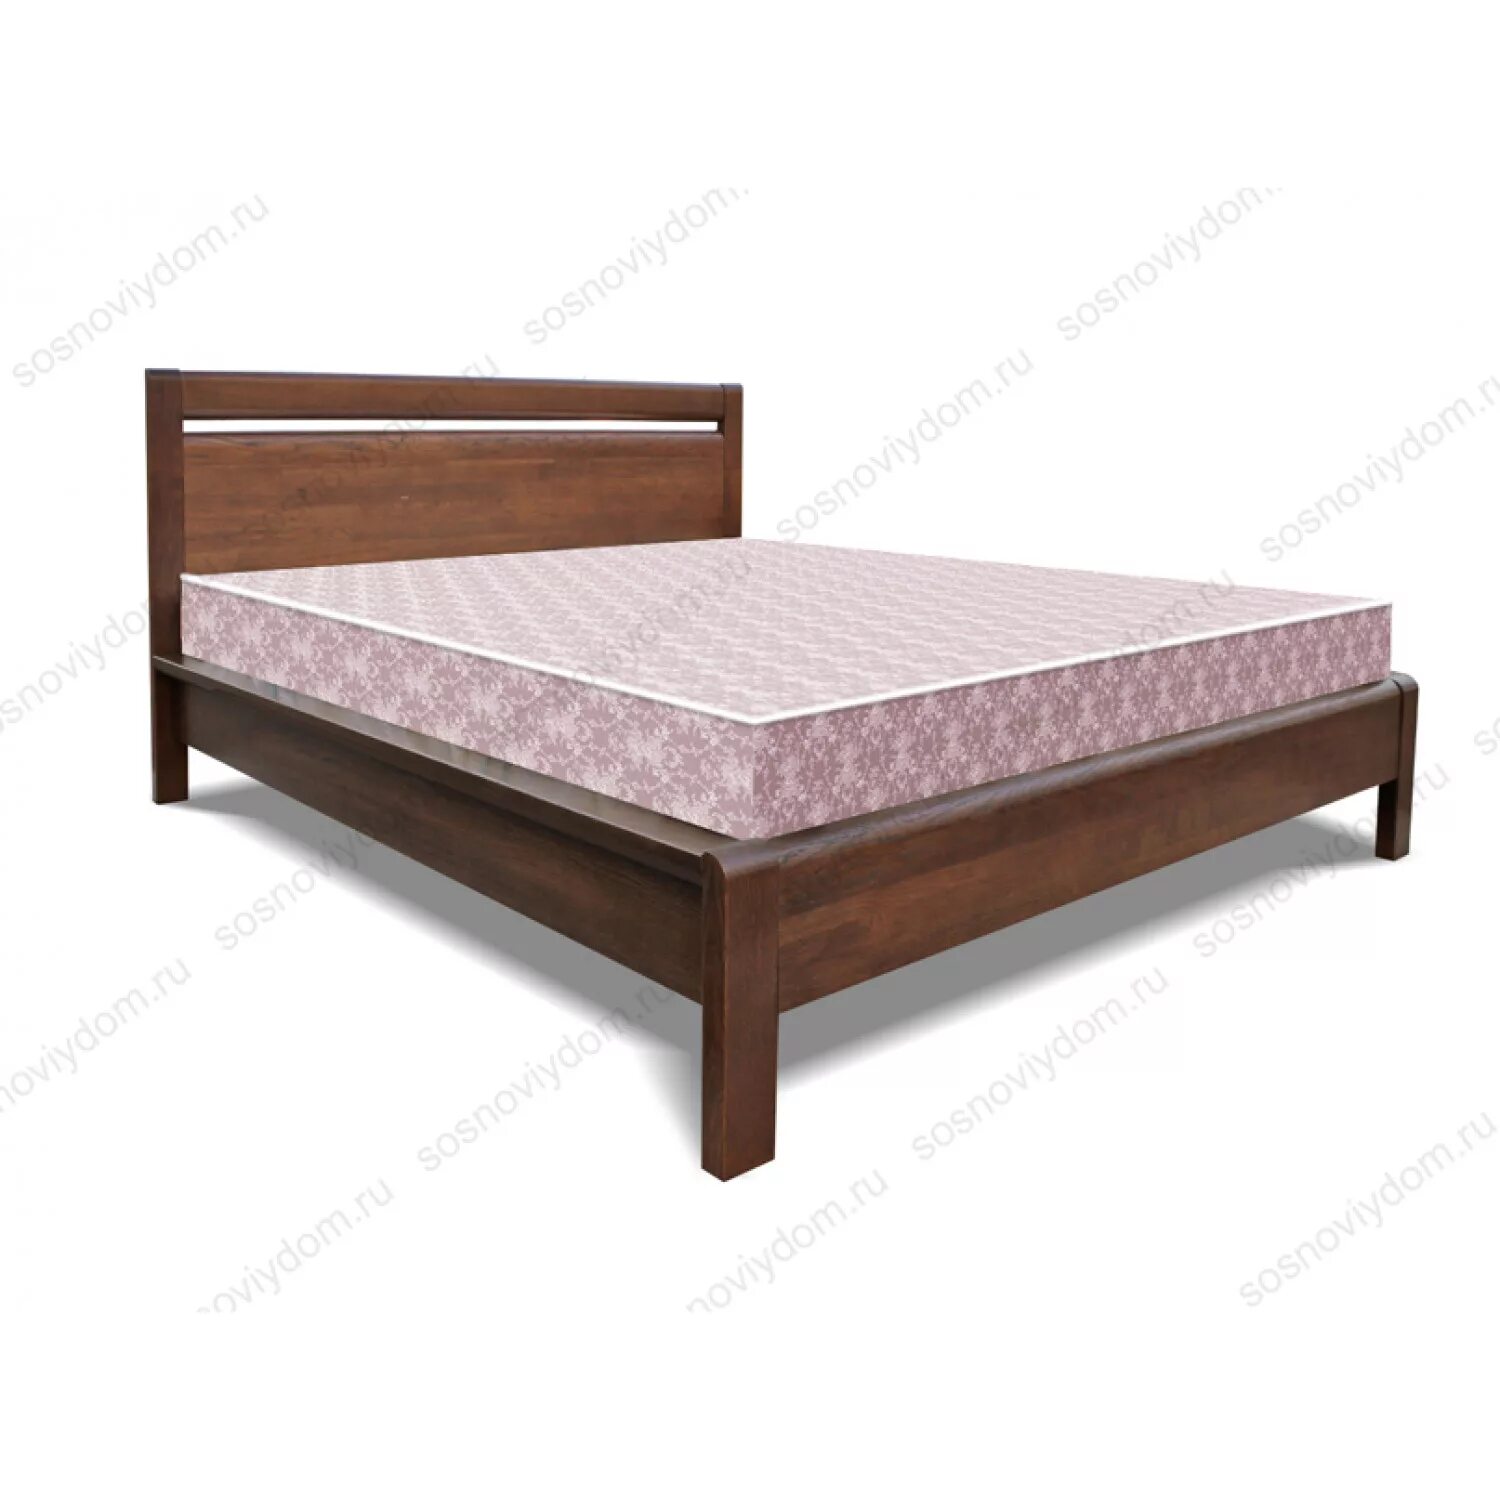 Кровать массив дерева 140х200 лазурит. Рамона кровать АСМ. Кровать из массива дуба Бриджит 140х200. Купить кровать из массива в спб